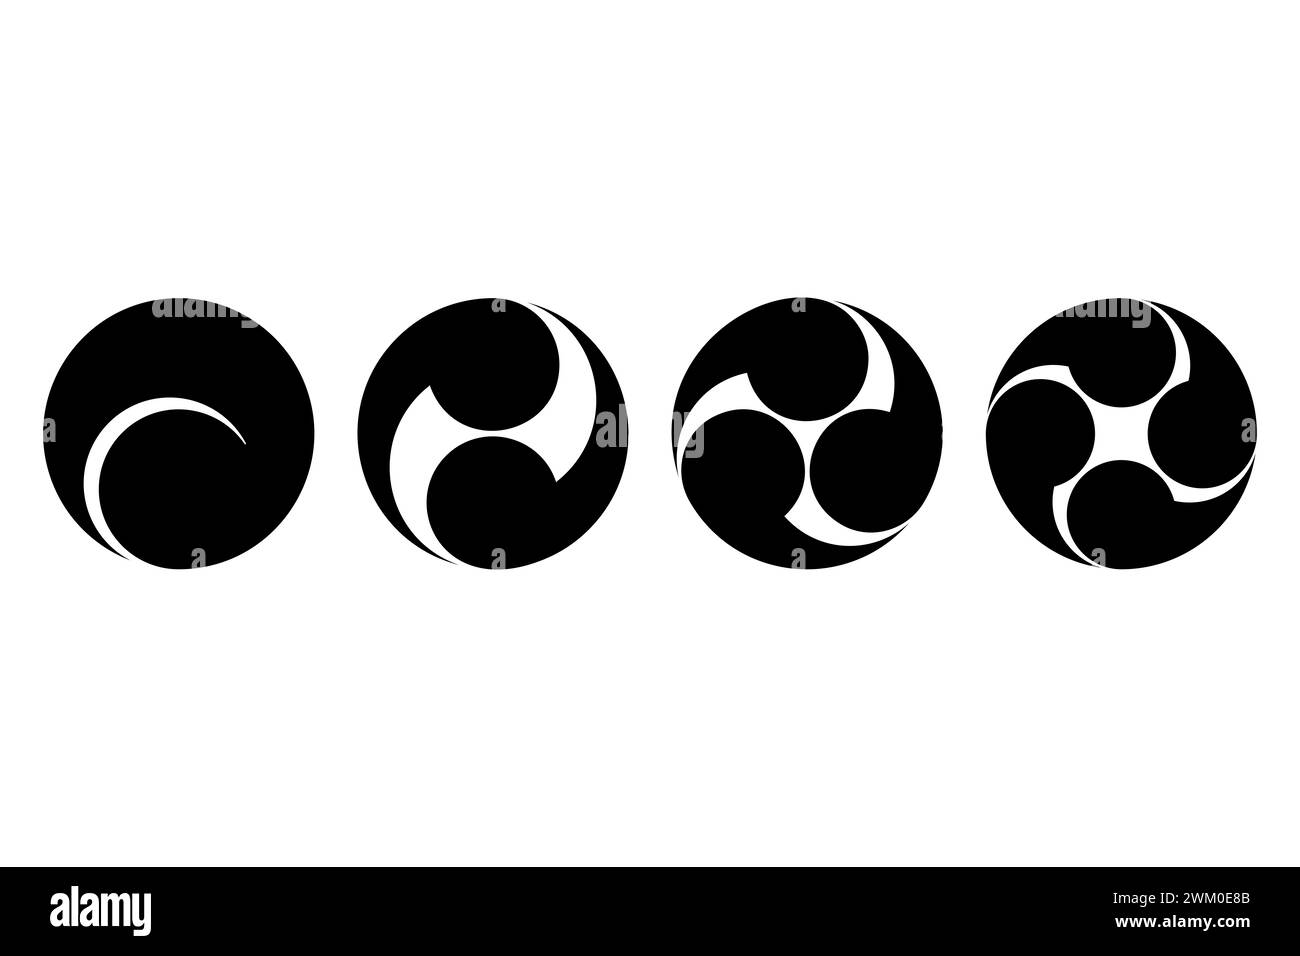 Simboli tomoe giapponesi, da sinistra in avanti a sinistra quattro volte. Quattro turni di virgole o di tadpole, circoscritti in un cerchio. Ampiamente utilizzato per emblemi, ecc. Foto Stock